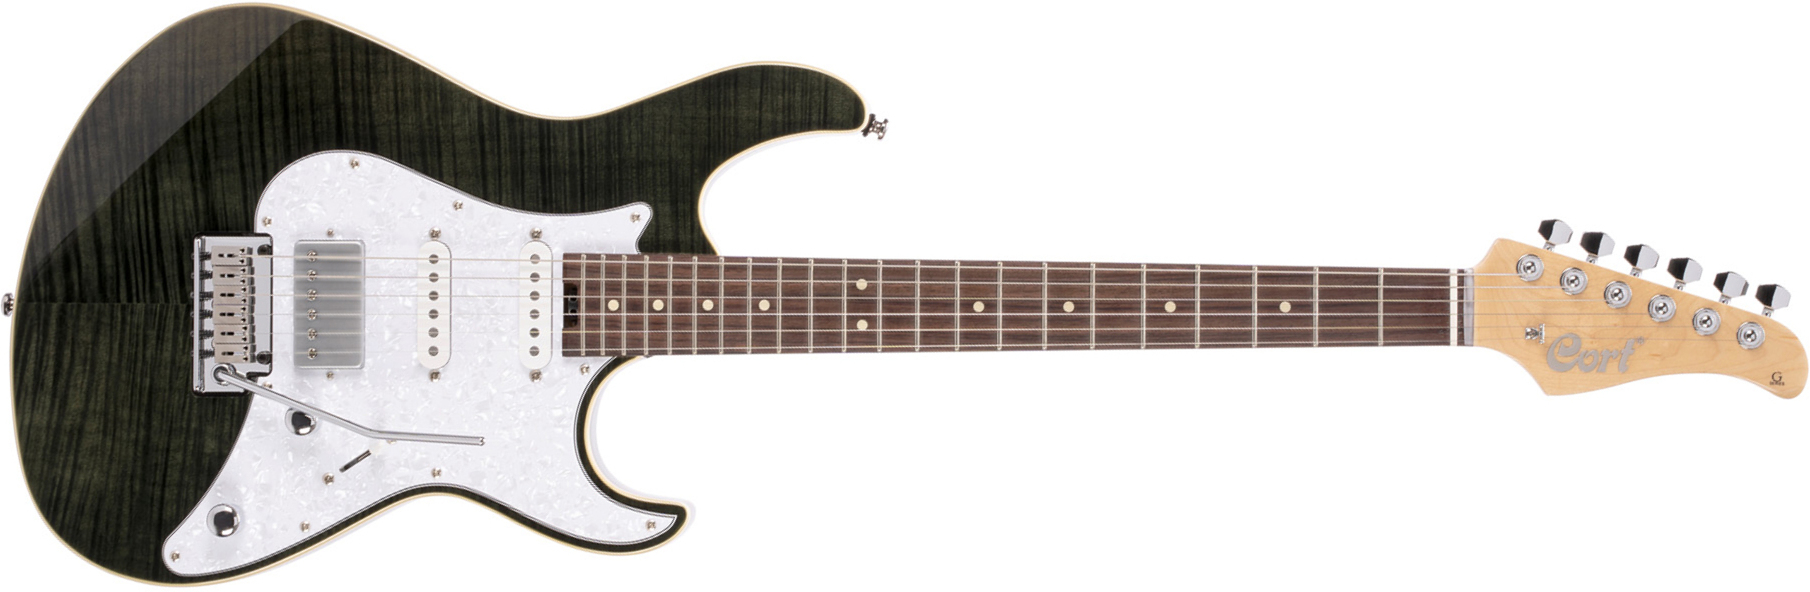 Cort G280 Setbk Hss Trem Rw - Trans Black - Elektrische gitaar in Str-vorm - Main picture